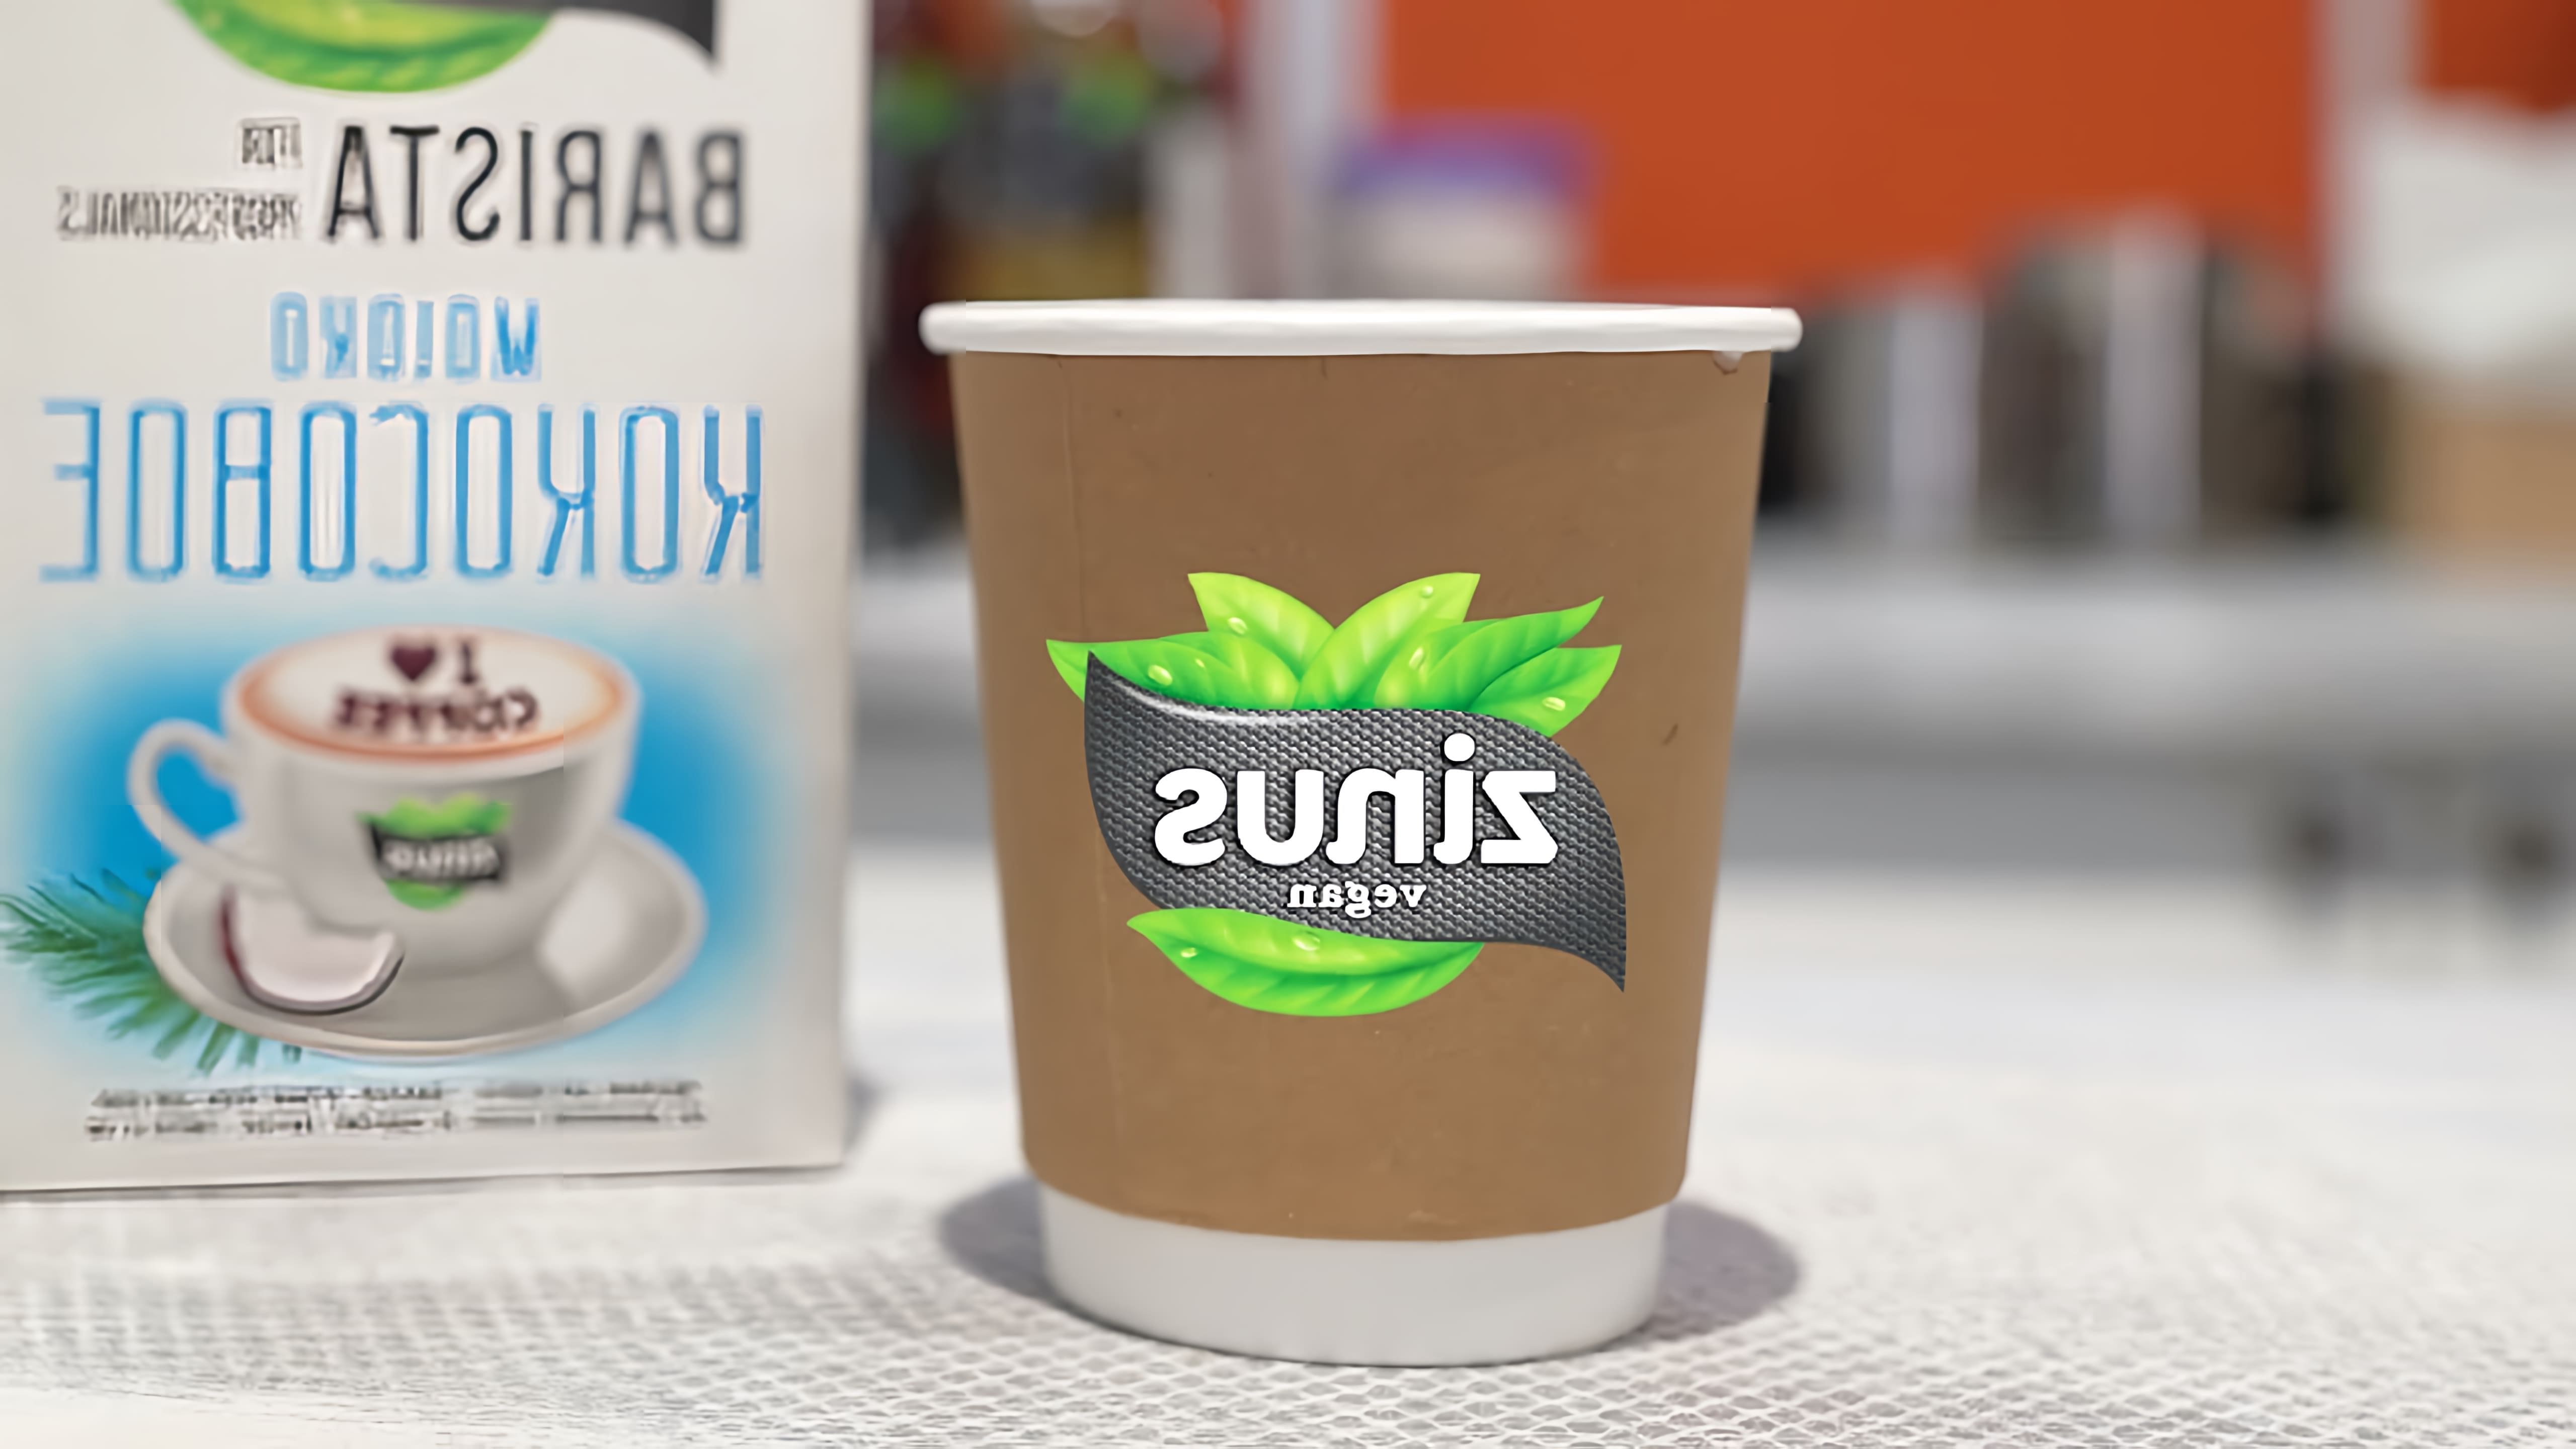 "Zinus BARISTA - это кокосовое и миндальное молоко, разработанное специально для кофе" - это видео-ролик, который рассказывает о новом продукте - кокосовом и миндальном молоке Zinus BARISTA